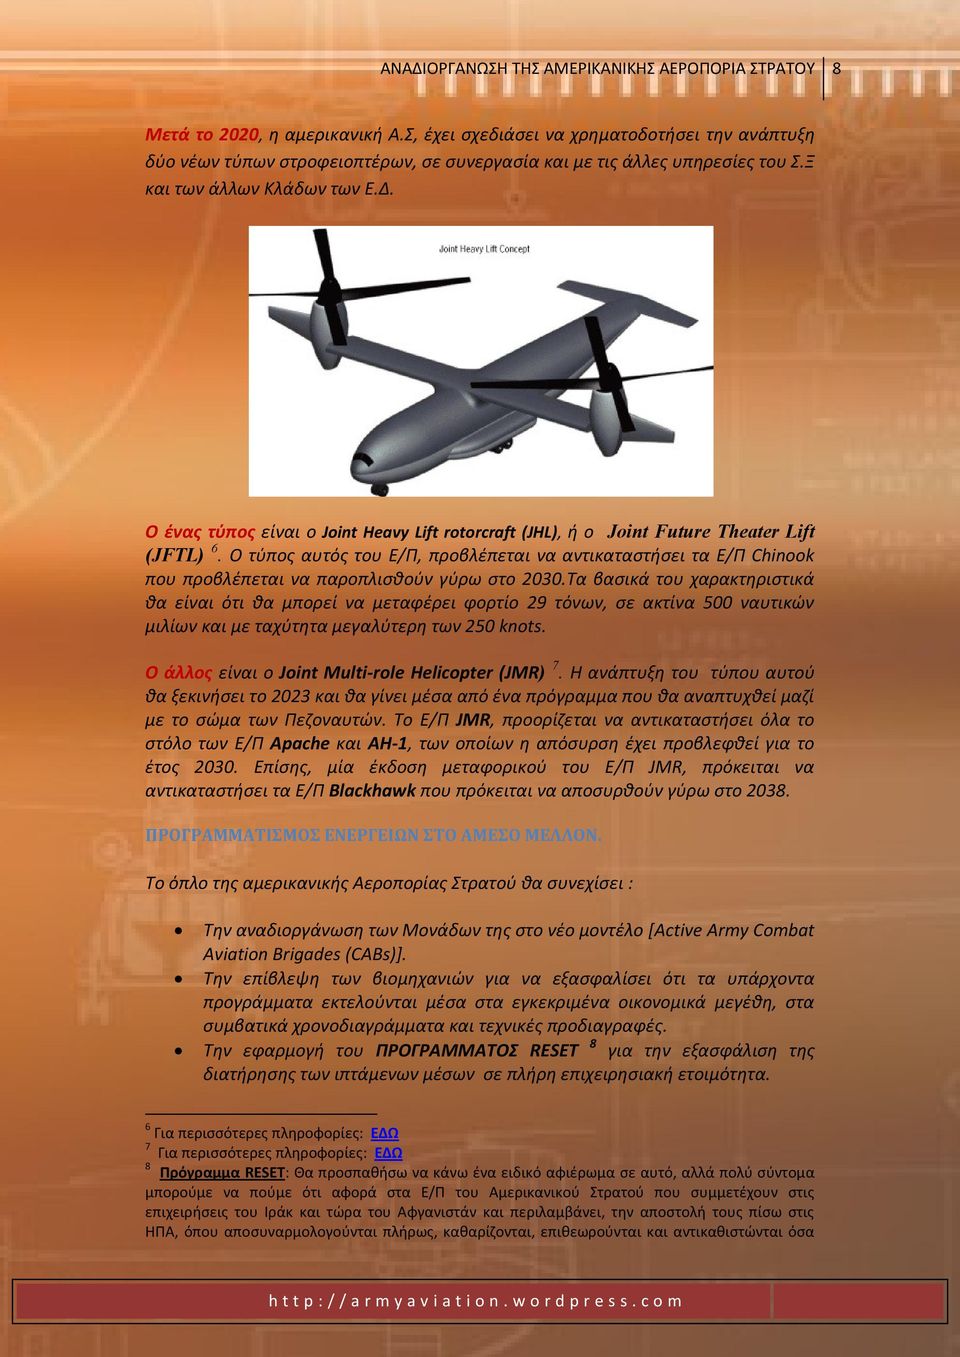 Ο ζνασ τφποσ είναι ο Joint Heavy Lift rotorcraft (JHL), ι ο Joint Future Theater Lift (JFTL) 6.